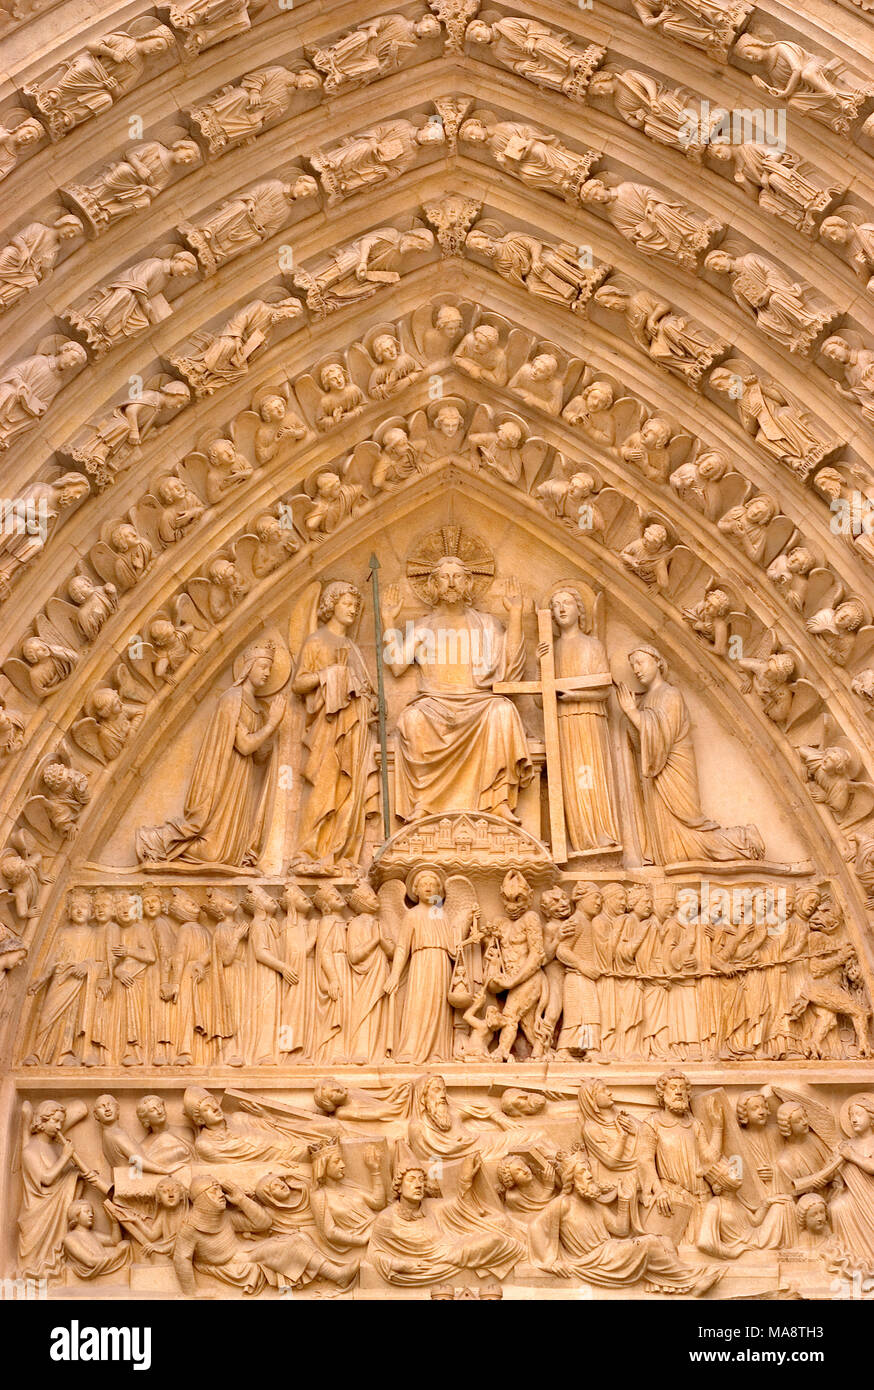 Parigi, Francia. La cattedrale di Notre Dame. Dettaglio delle figure scolpite nel portale centrale al di sopra della porta principale o Porte de Jugement Foto Stock